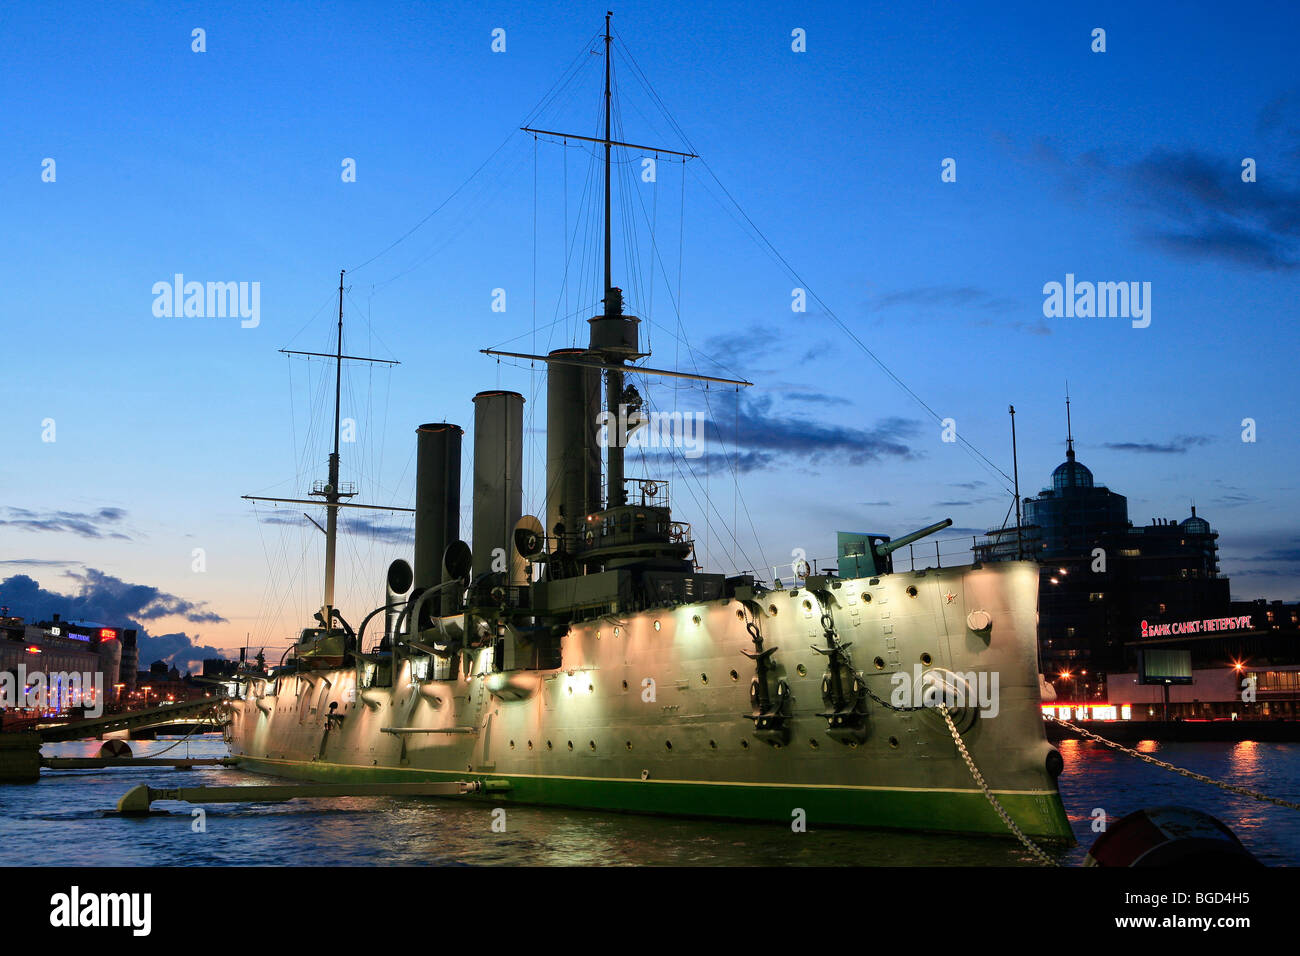 Le croiseur Aurore éclairée la nuit à Saint Petersburg, Russie Banque D'Images